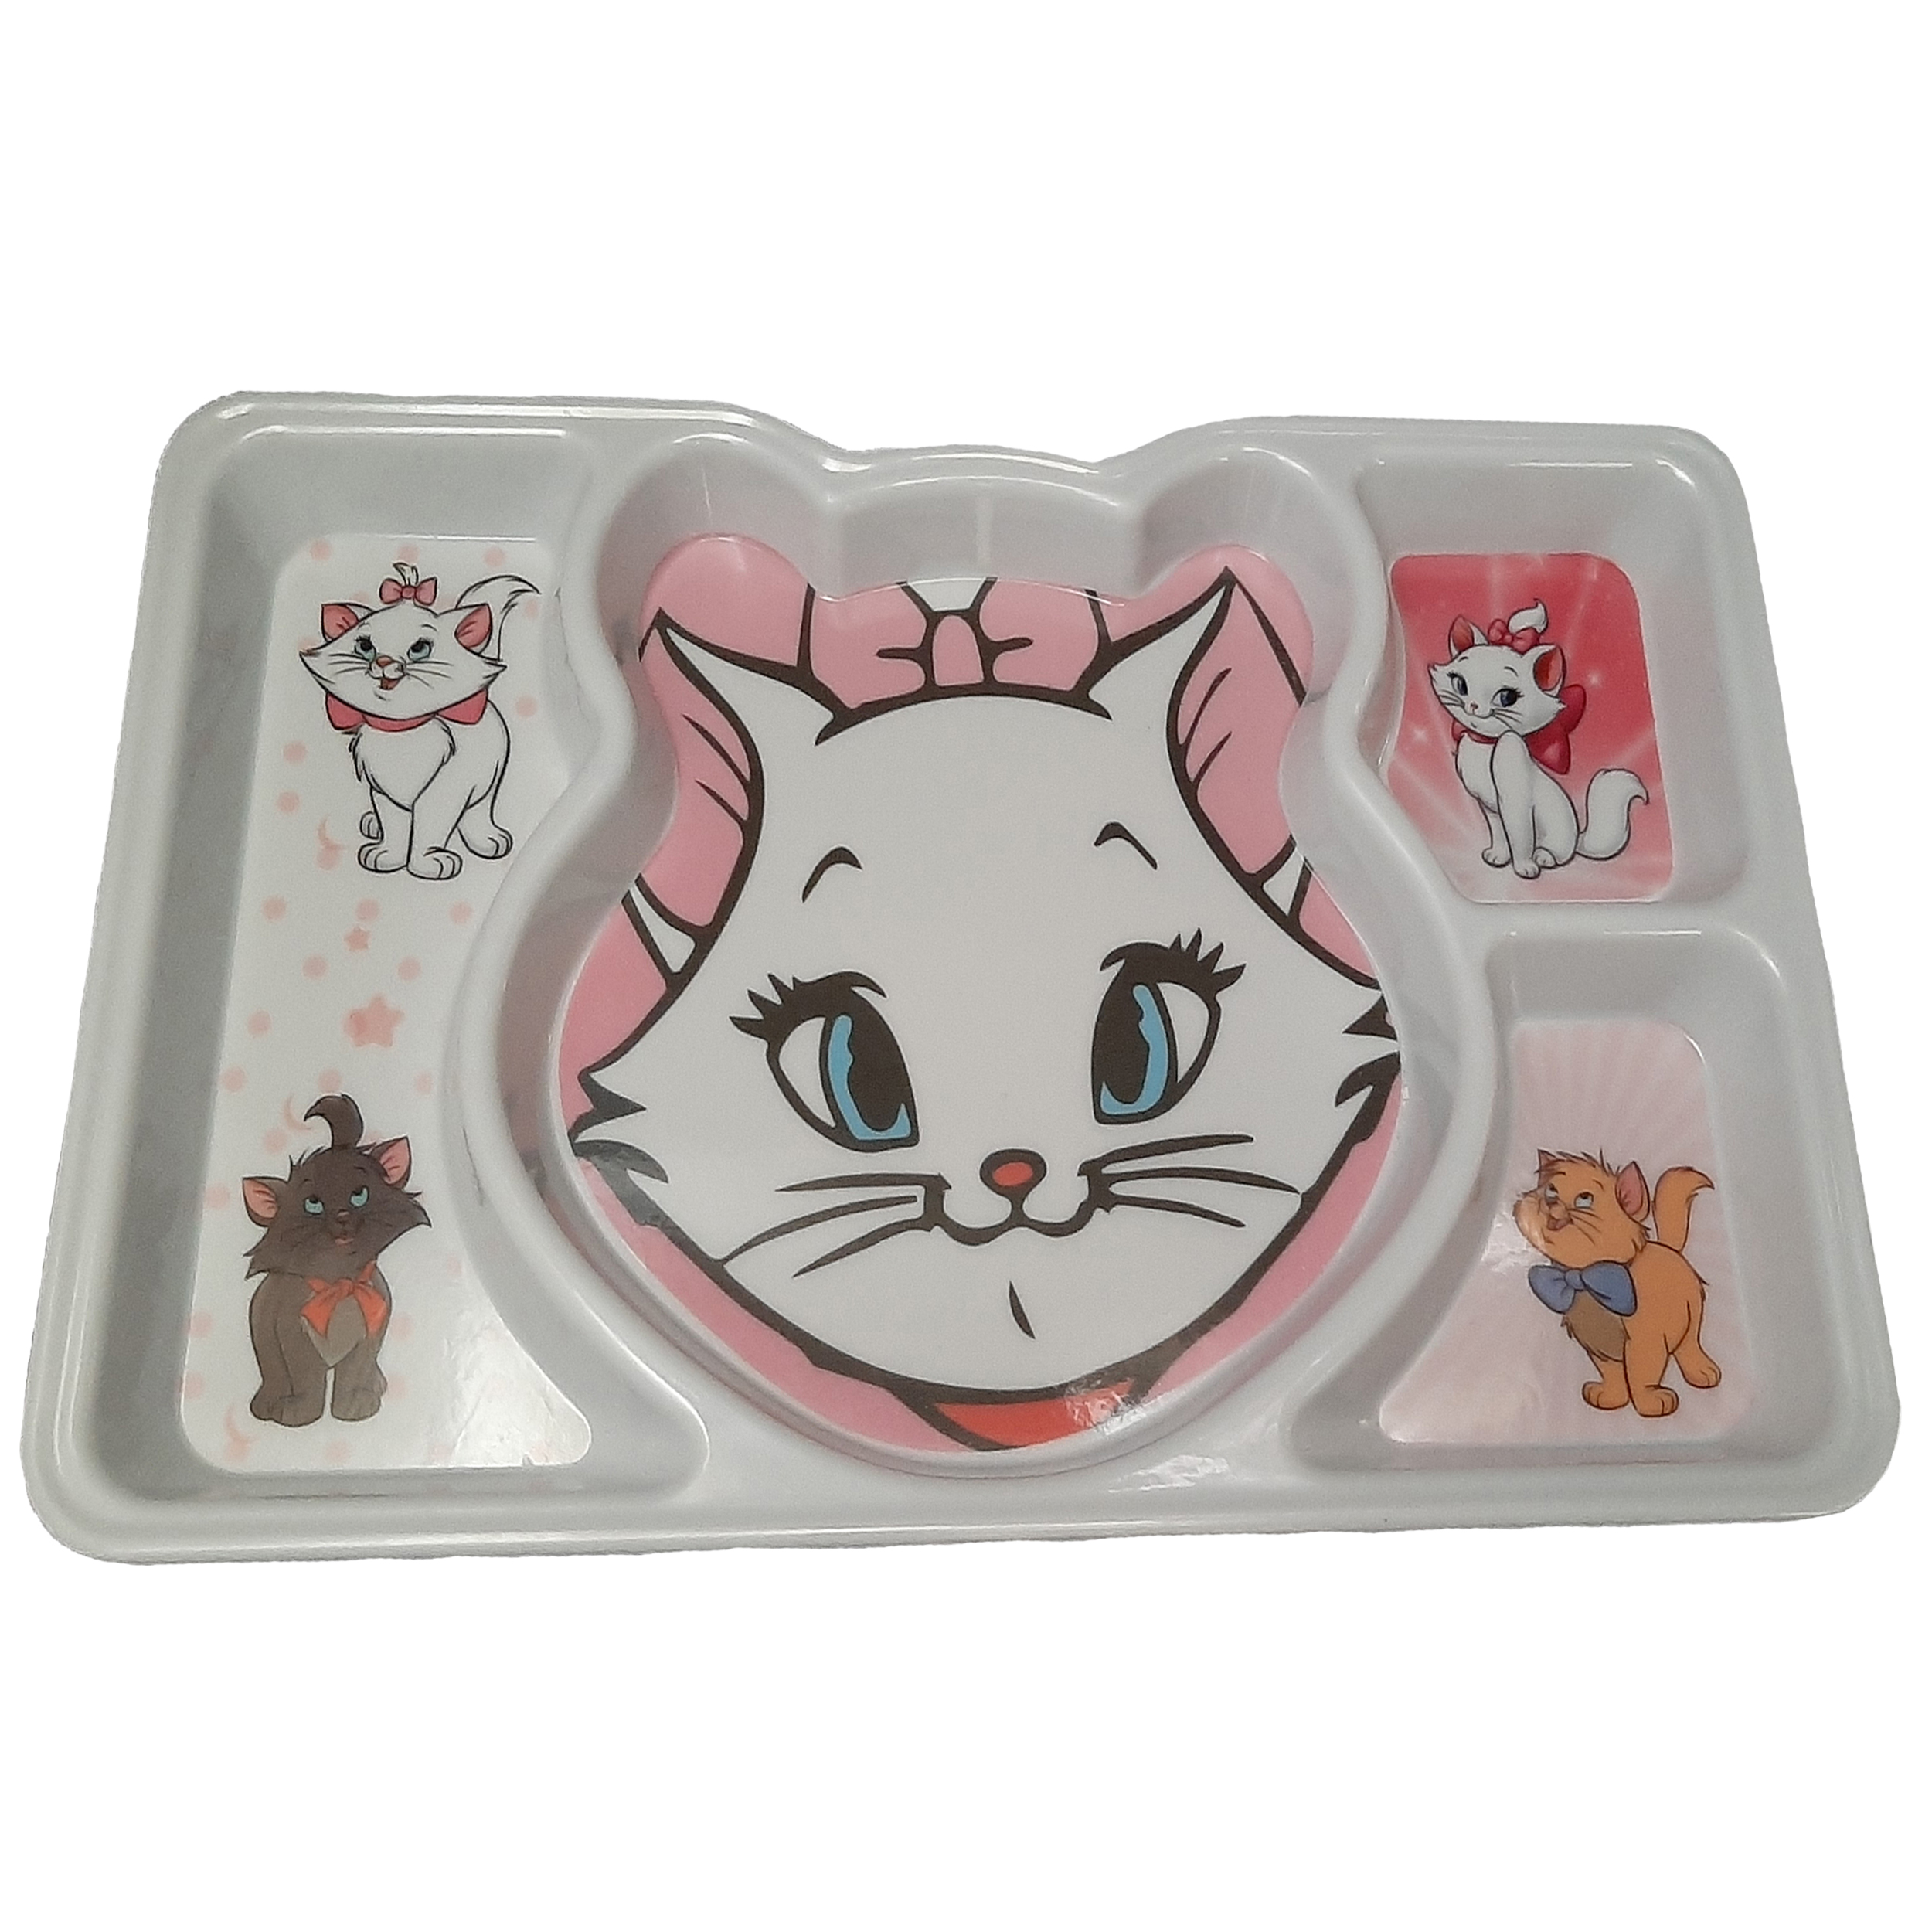 ظرف غذای کودک طرح گربه های اشرافی مدل 1400